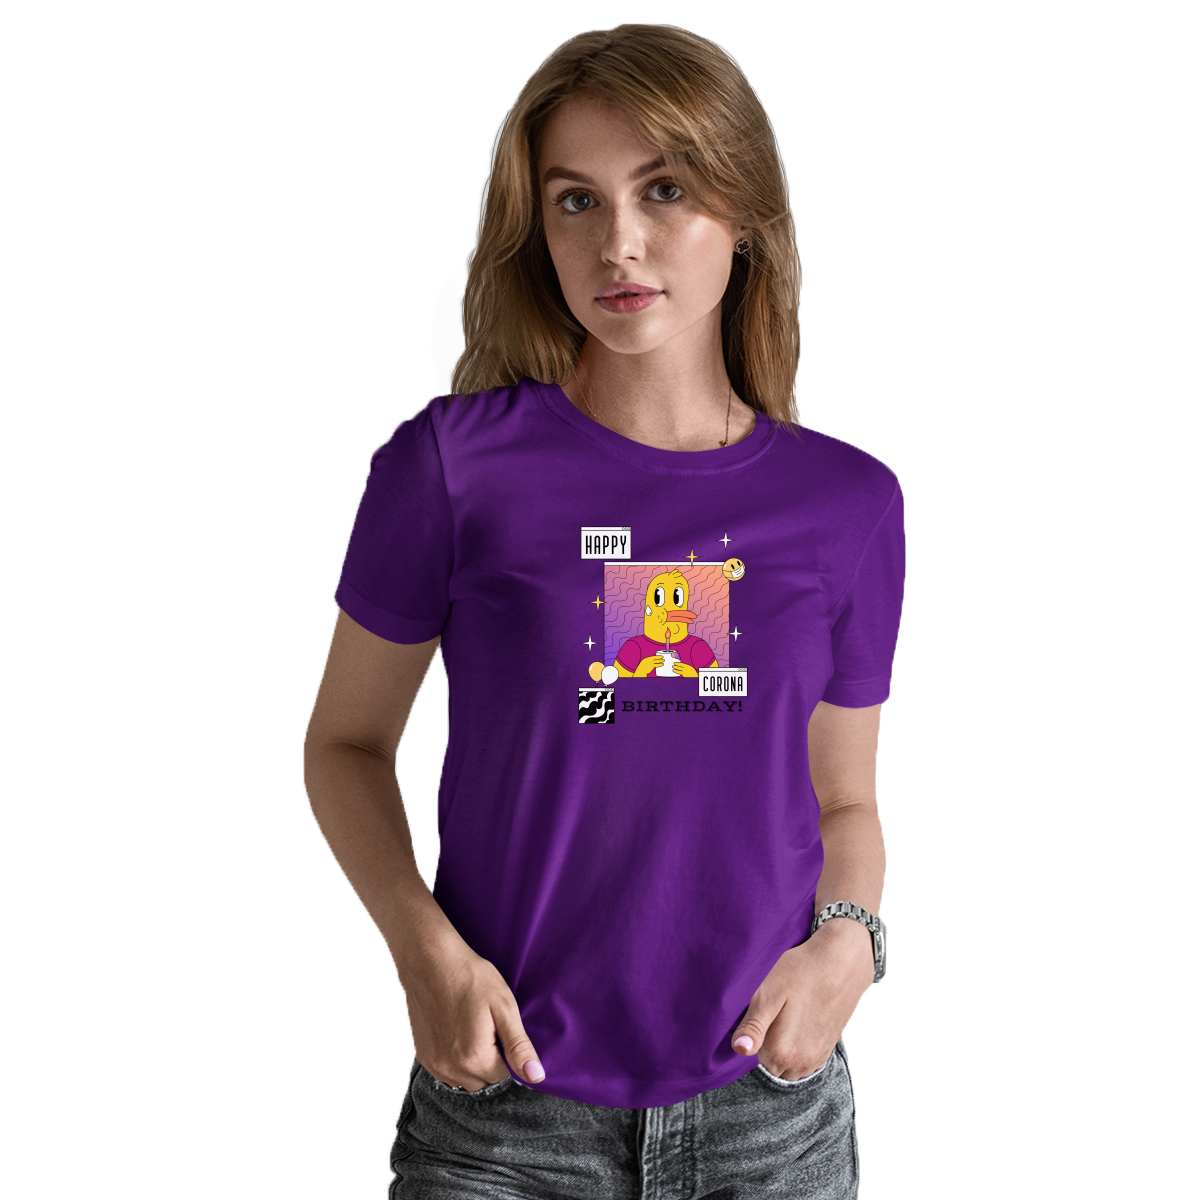 Happy Corona Birthday Women's T-shirt | Purple